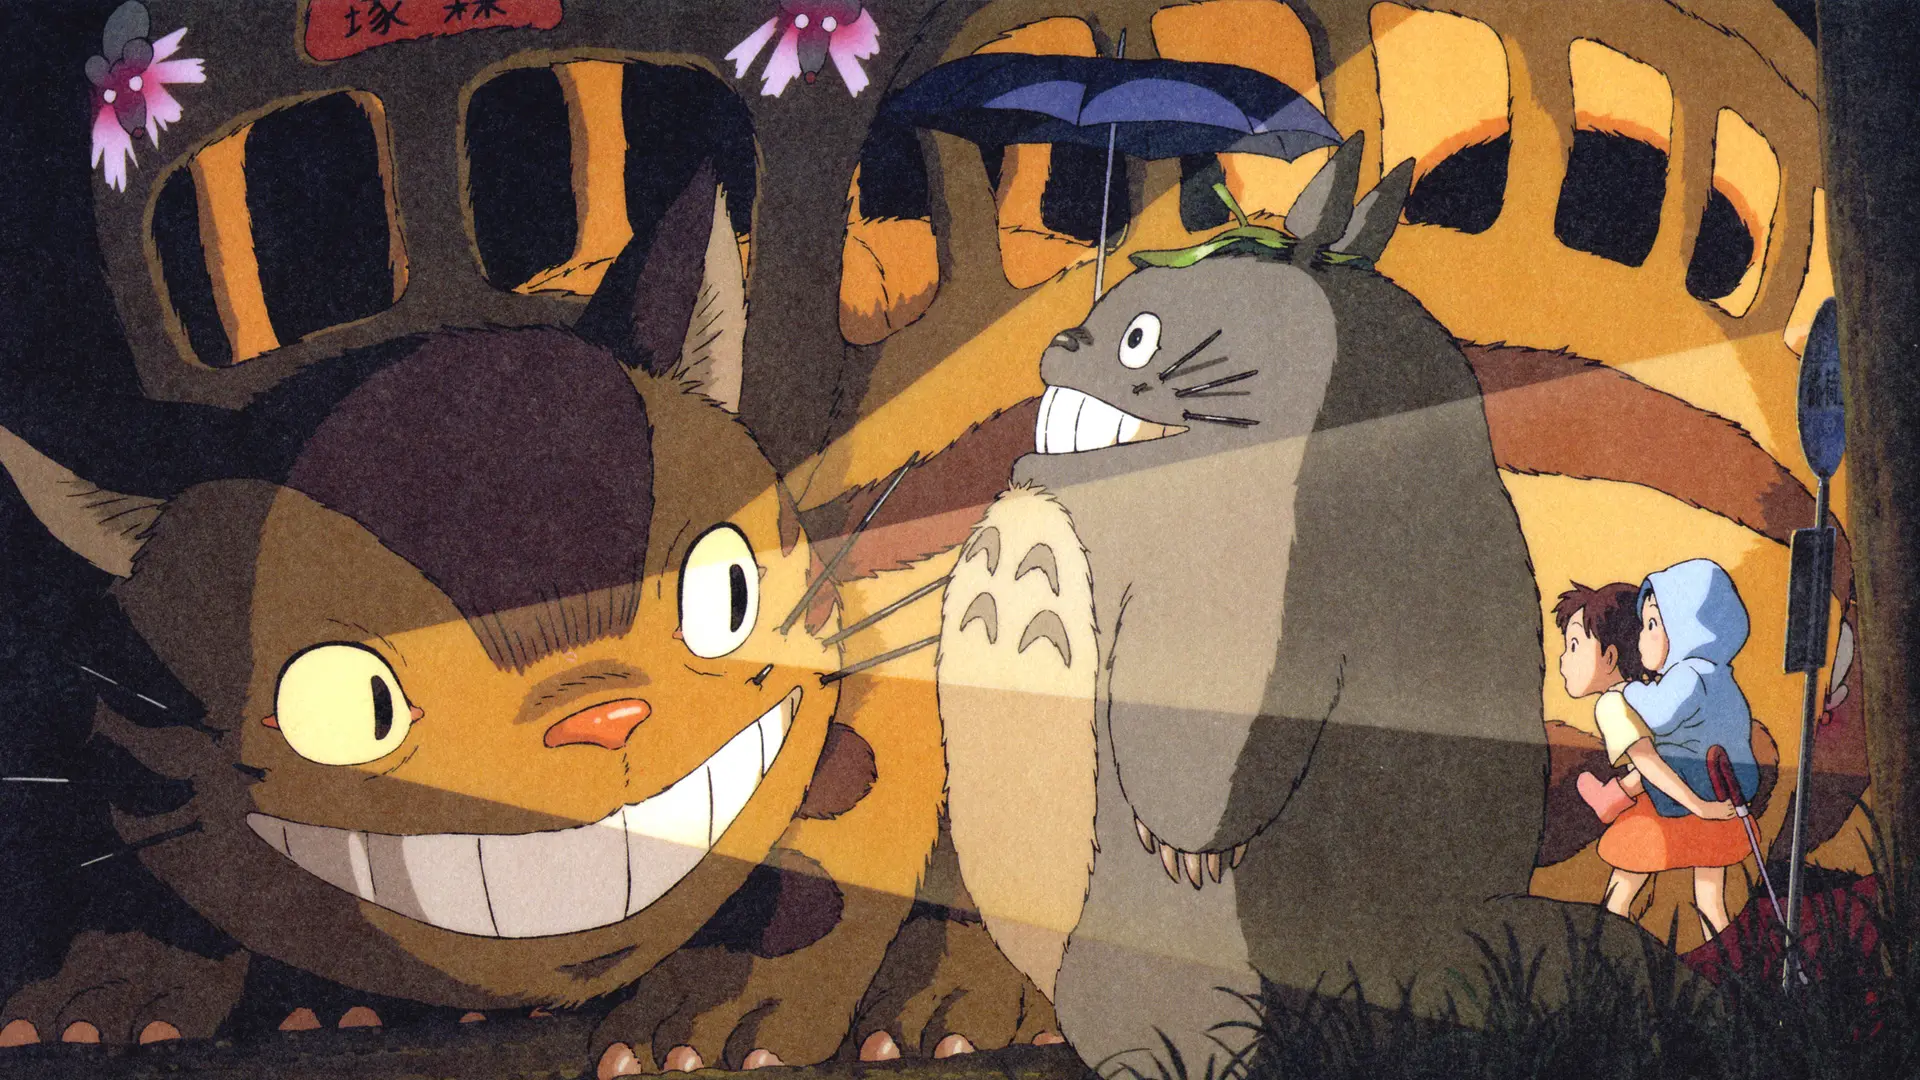 De Ghibli a Pixar de la mano de Totoro